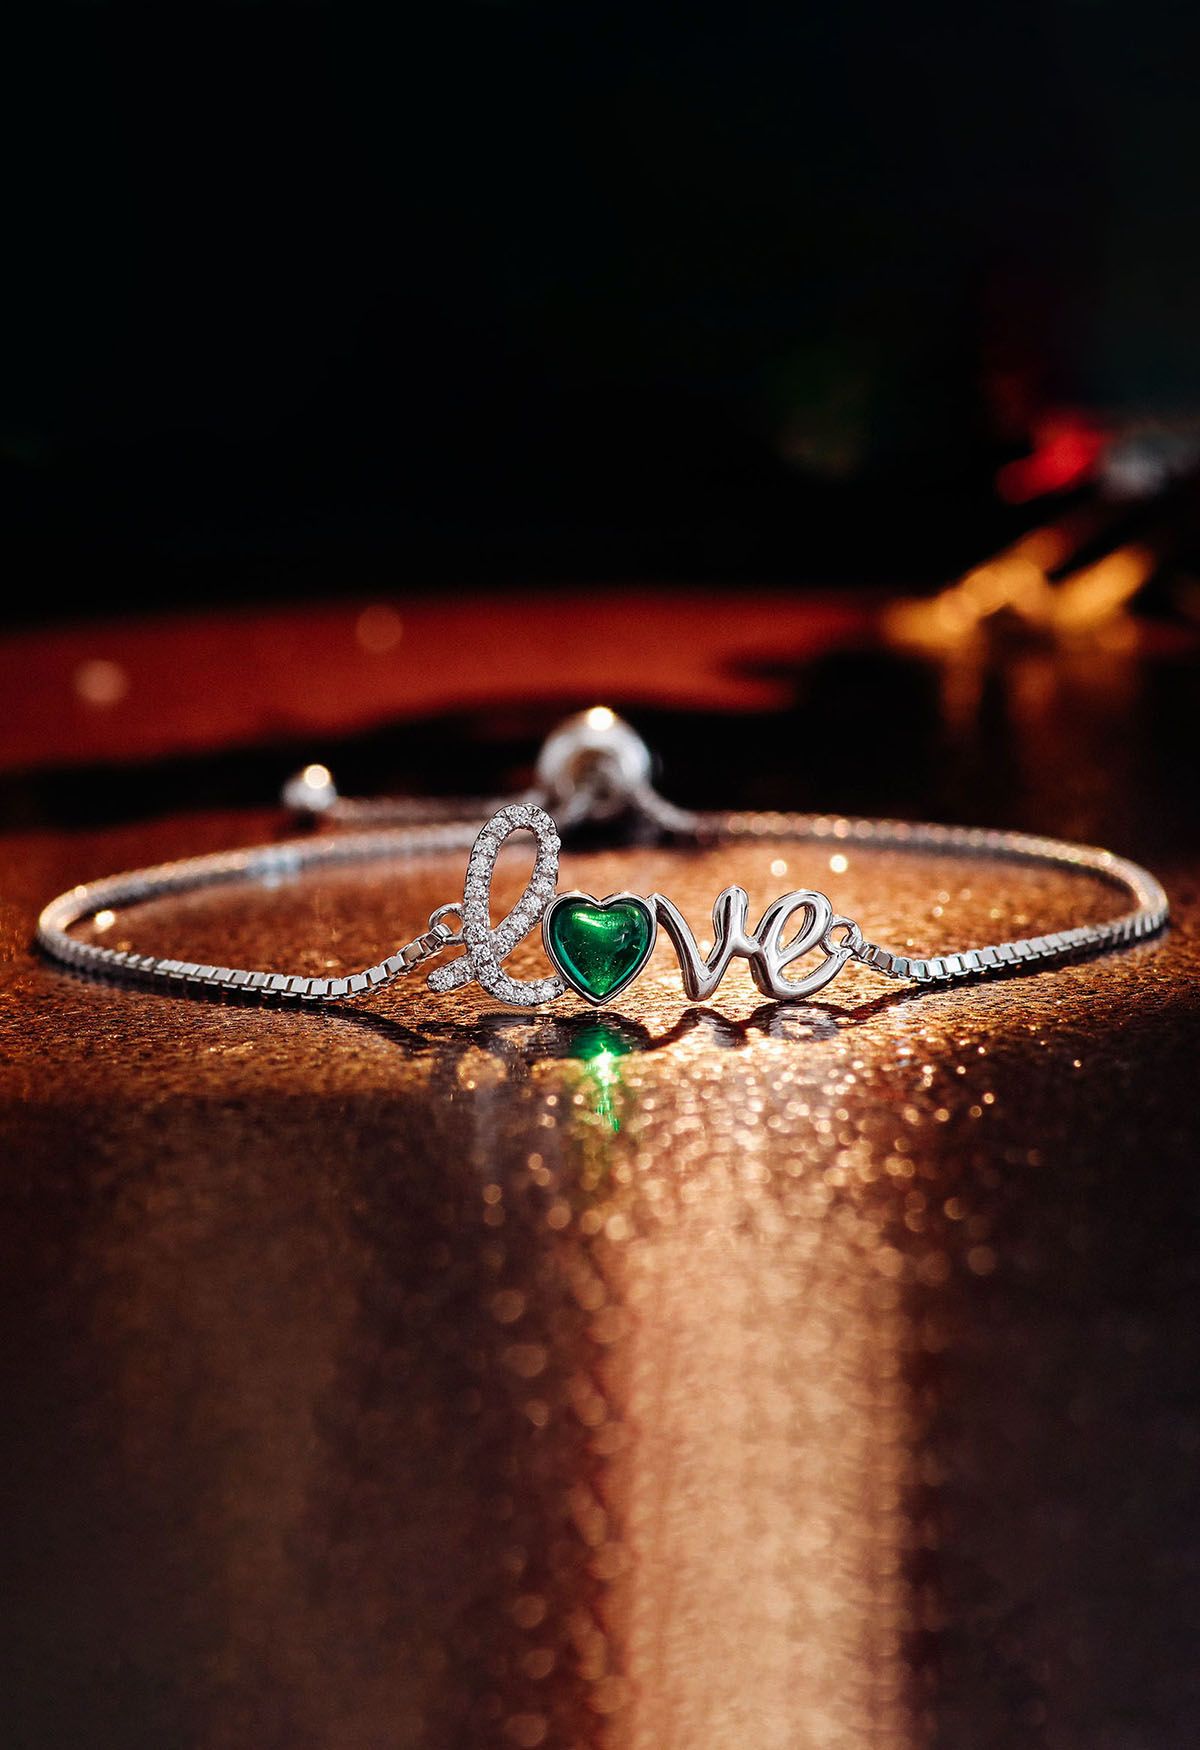 Bracciale smeraldo a forma di cuore con segno d'amore